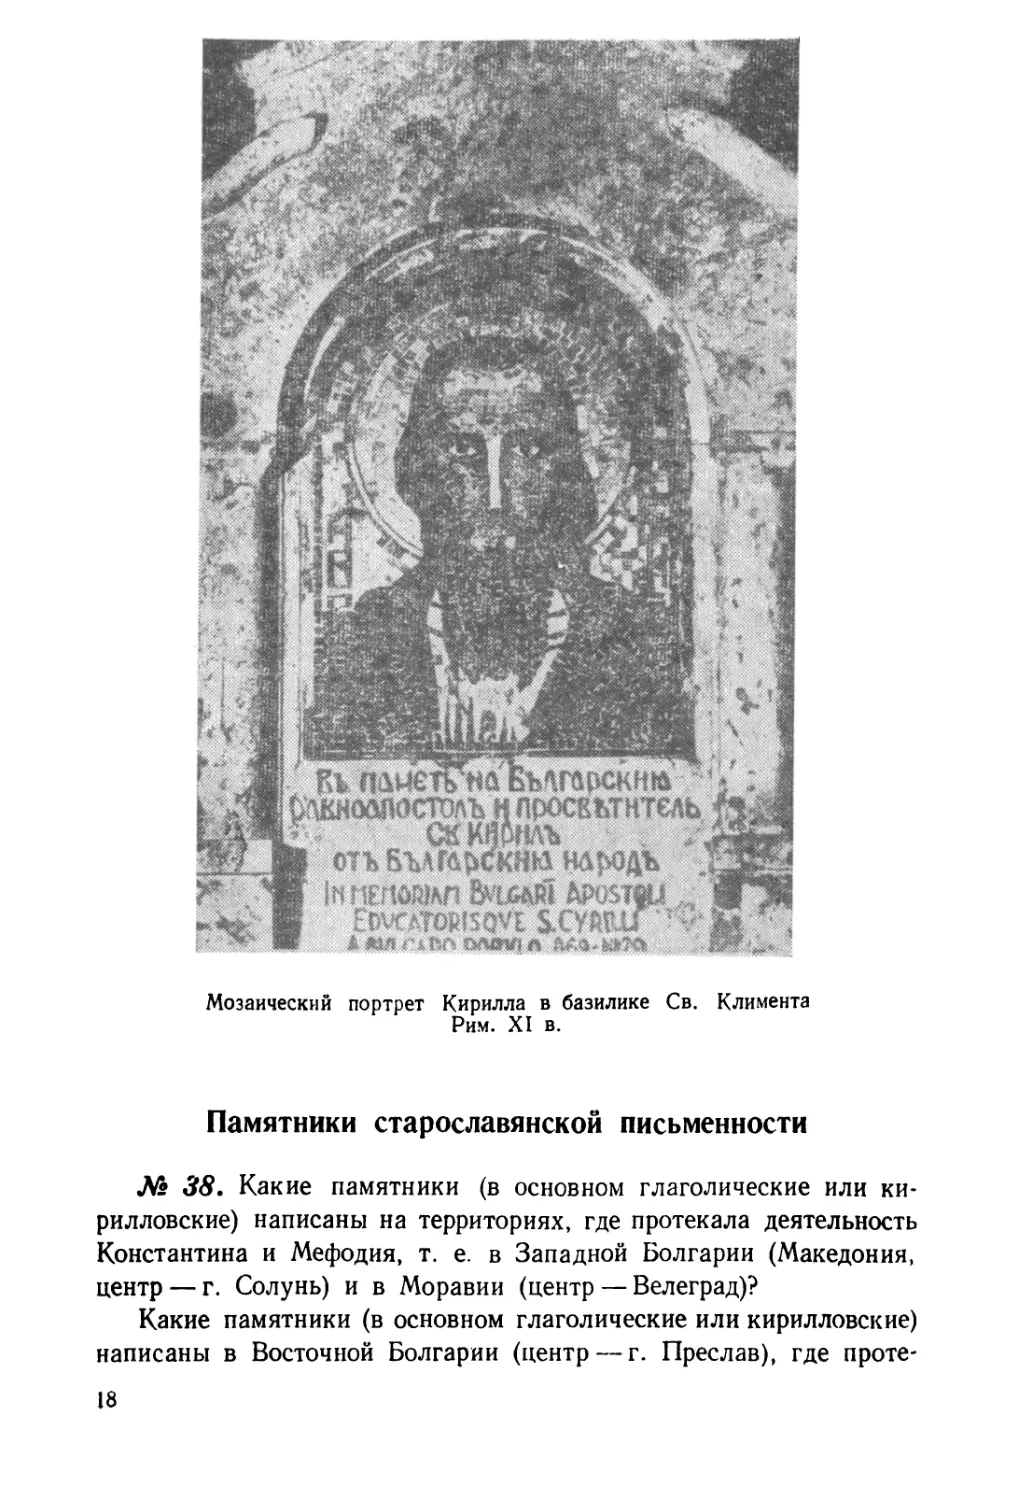 Памятники старославянской письменности